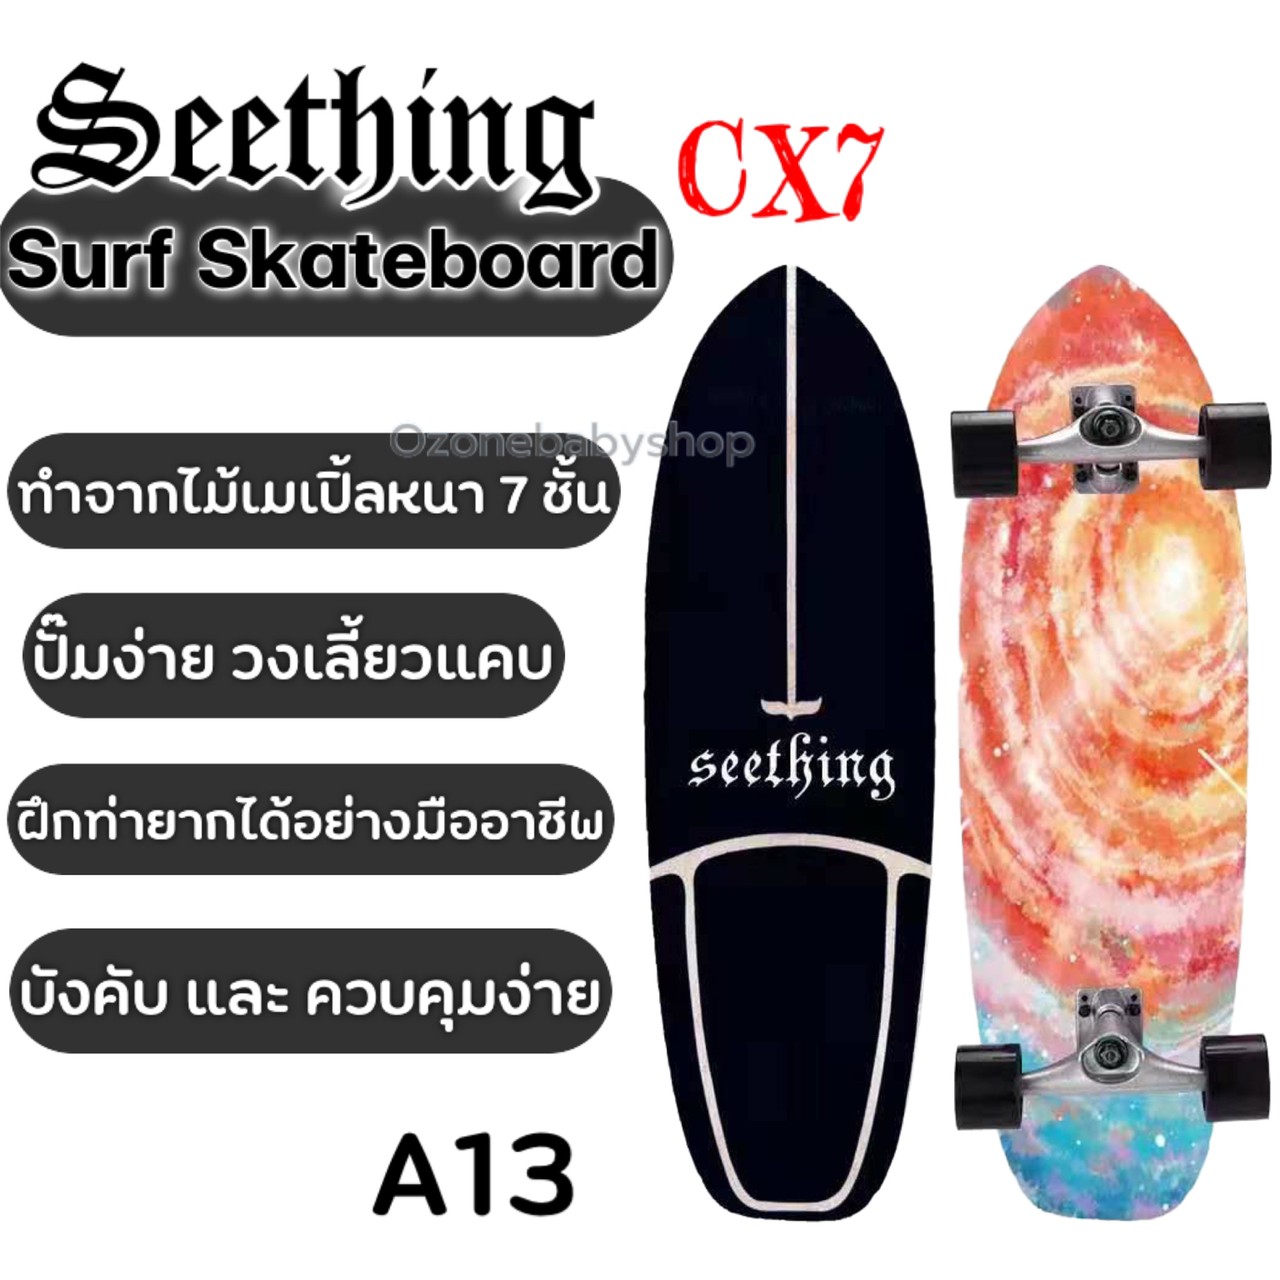 เซิร์ฟสเก็ต ?SEETHING แท้ เซิร์ฟสเก็ต CX7 SurfSkateboard 30 นิ้ว เซิร์ฟบอร์ด? 『ทรัคCX7 』